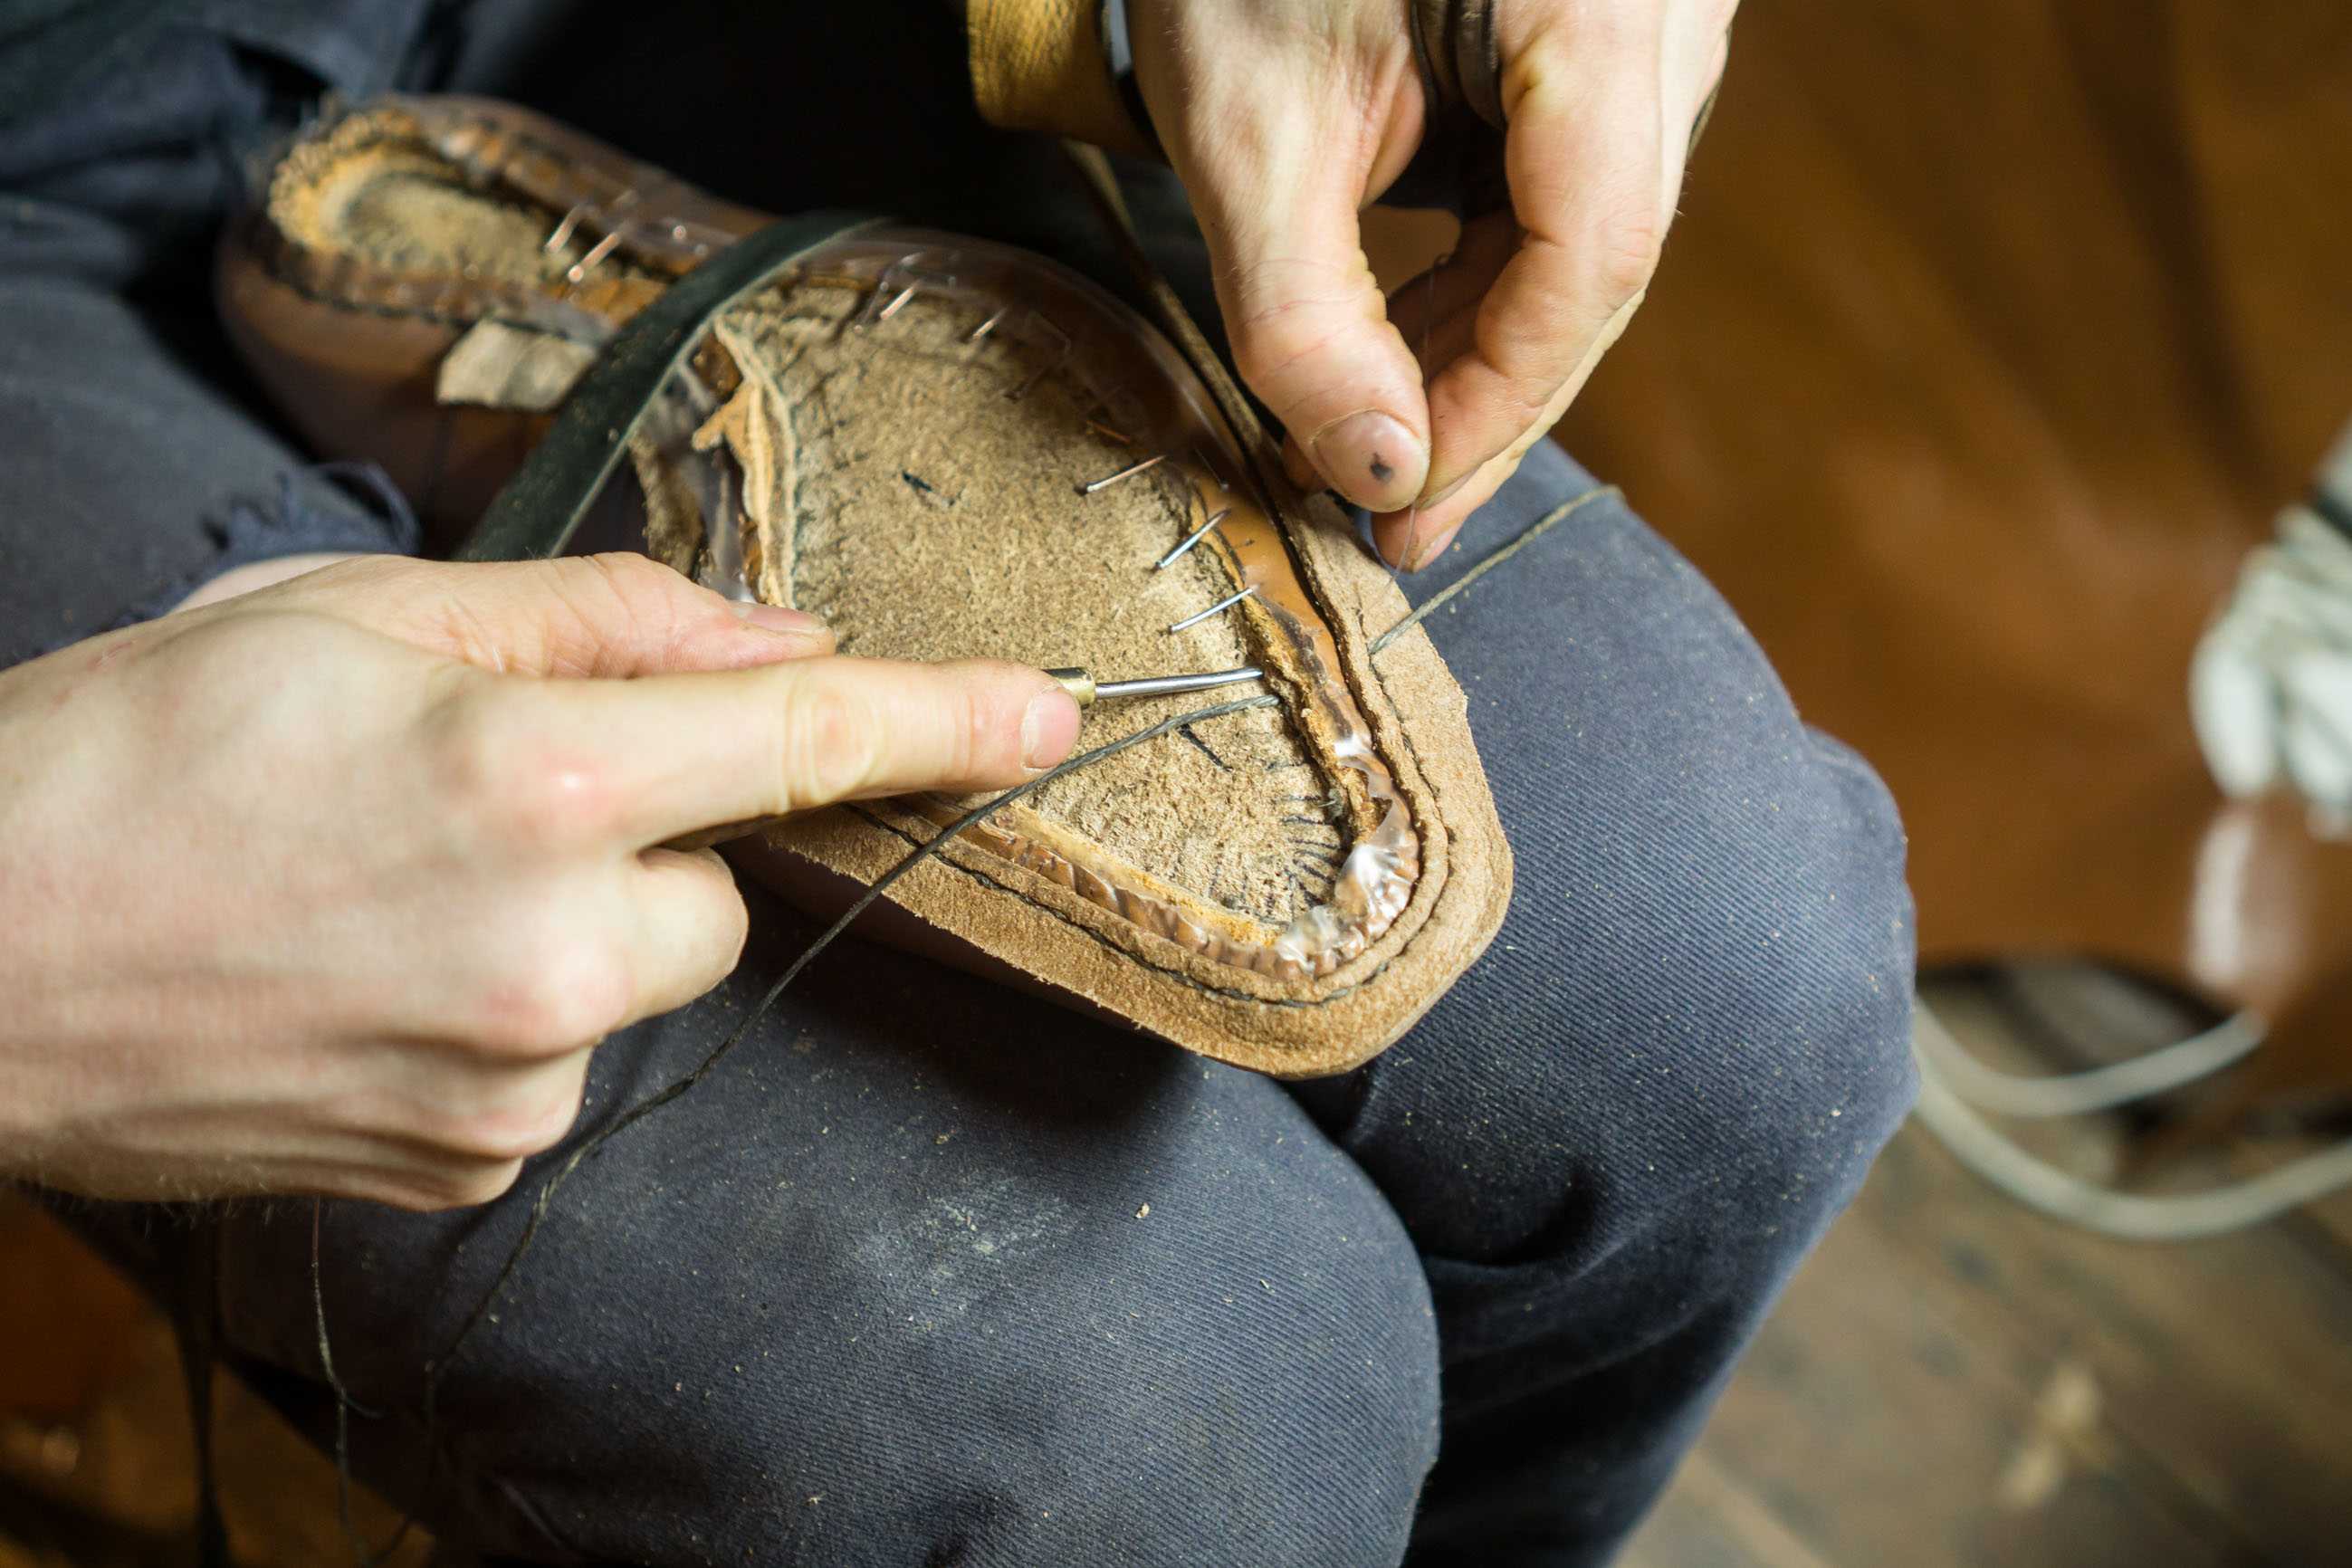 Обувь, сшитая своими руками, может стать настоящим предметом гордости своего владельца, прослужить ему долгие годы, создать благоприятные условия для повседневной жизни и сэкономить бюджет.